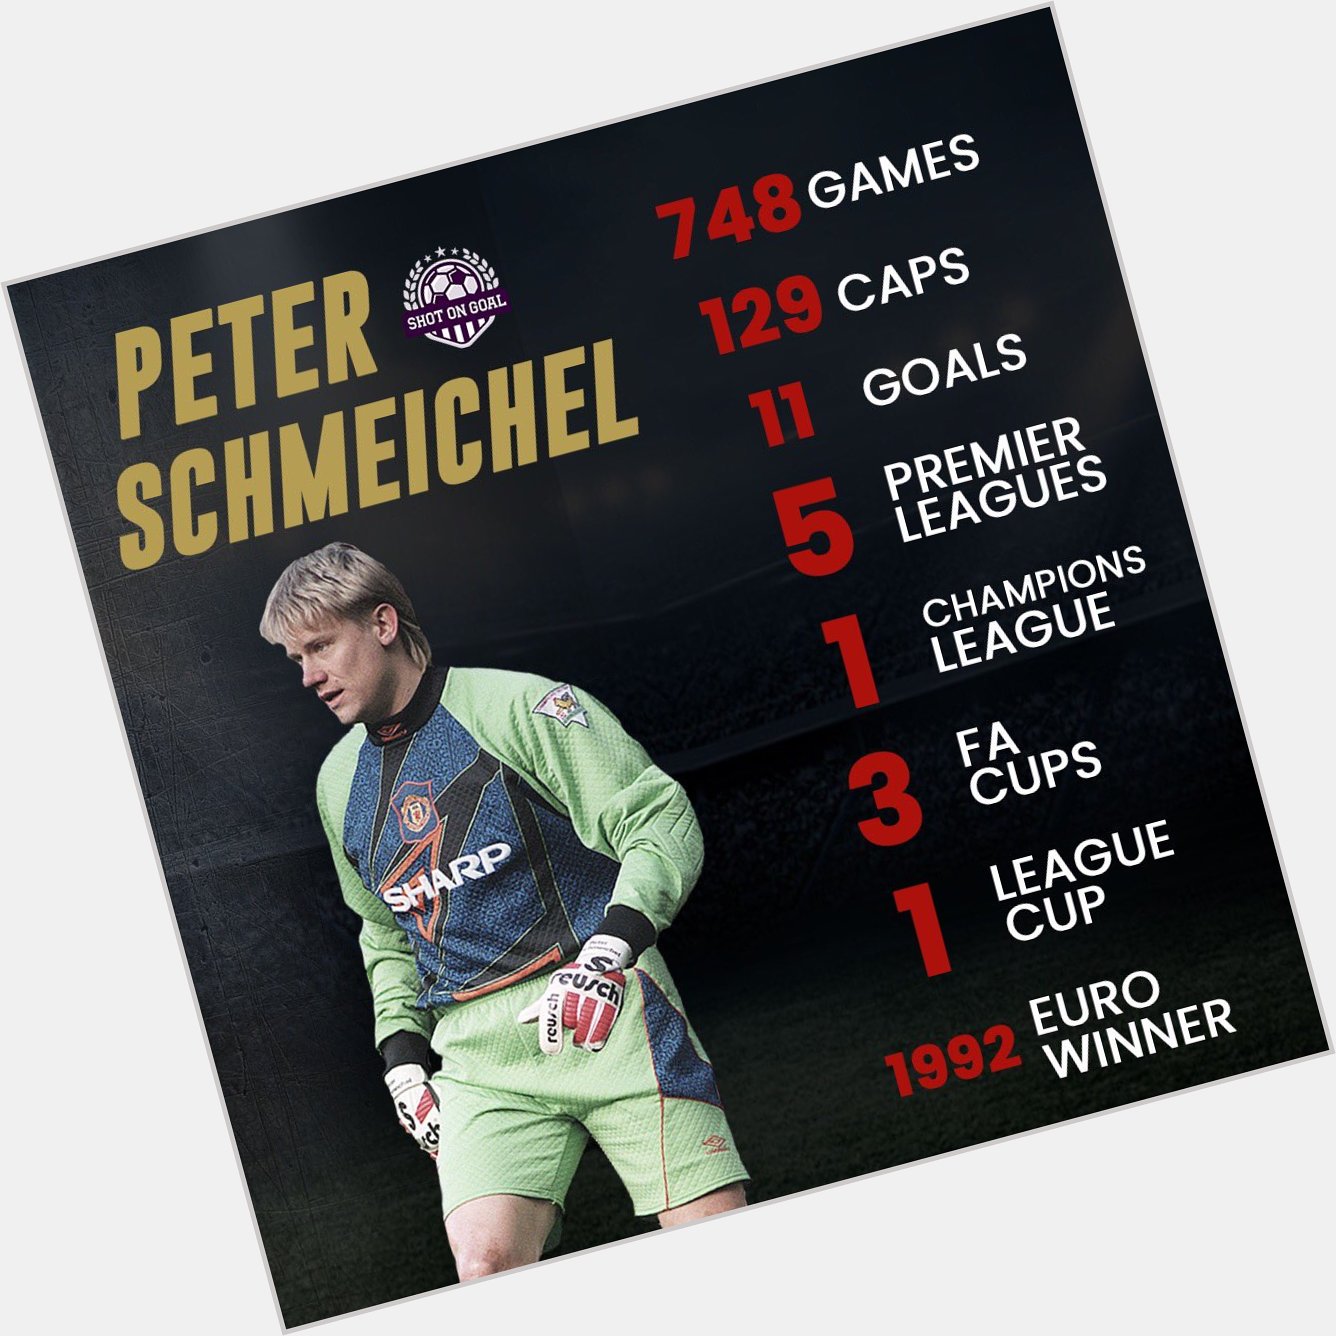 Happy Birthday, Peter Schmeichel! 

Is he the best goalie the has seen? 